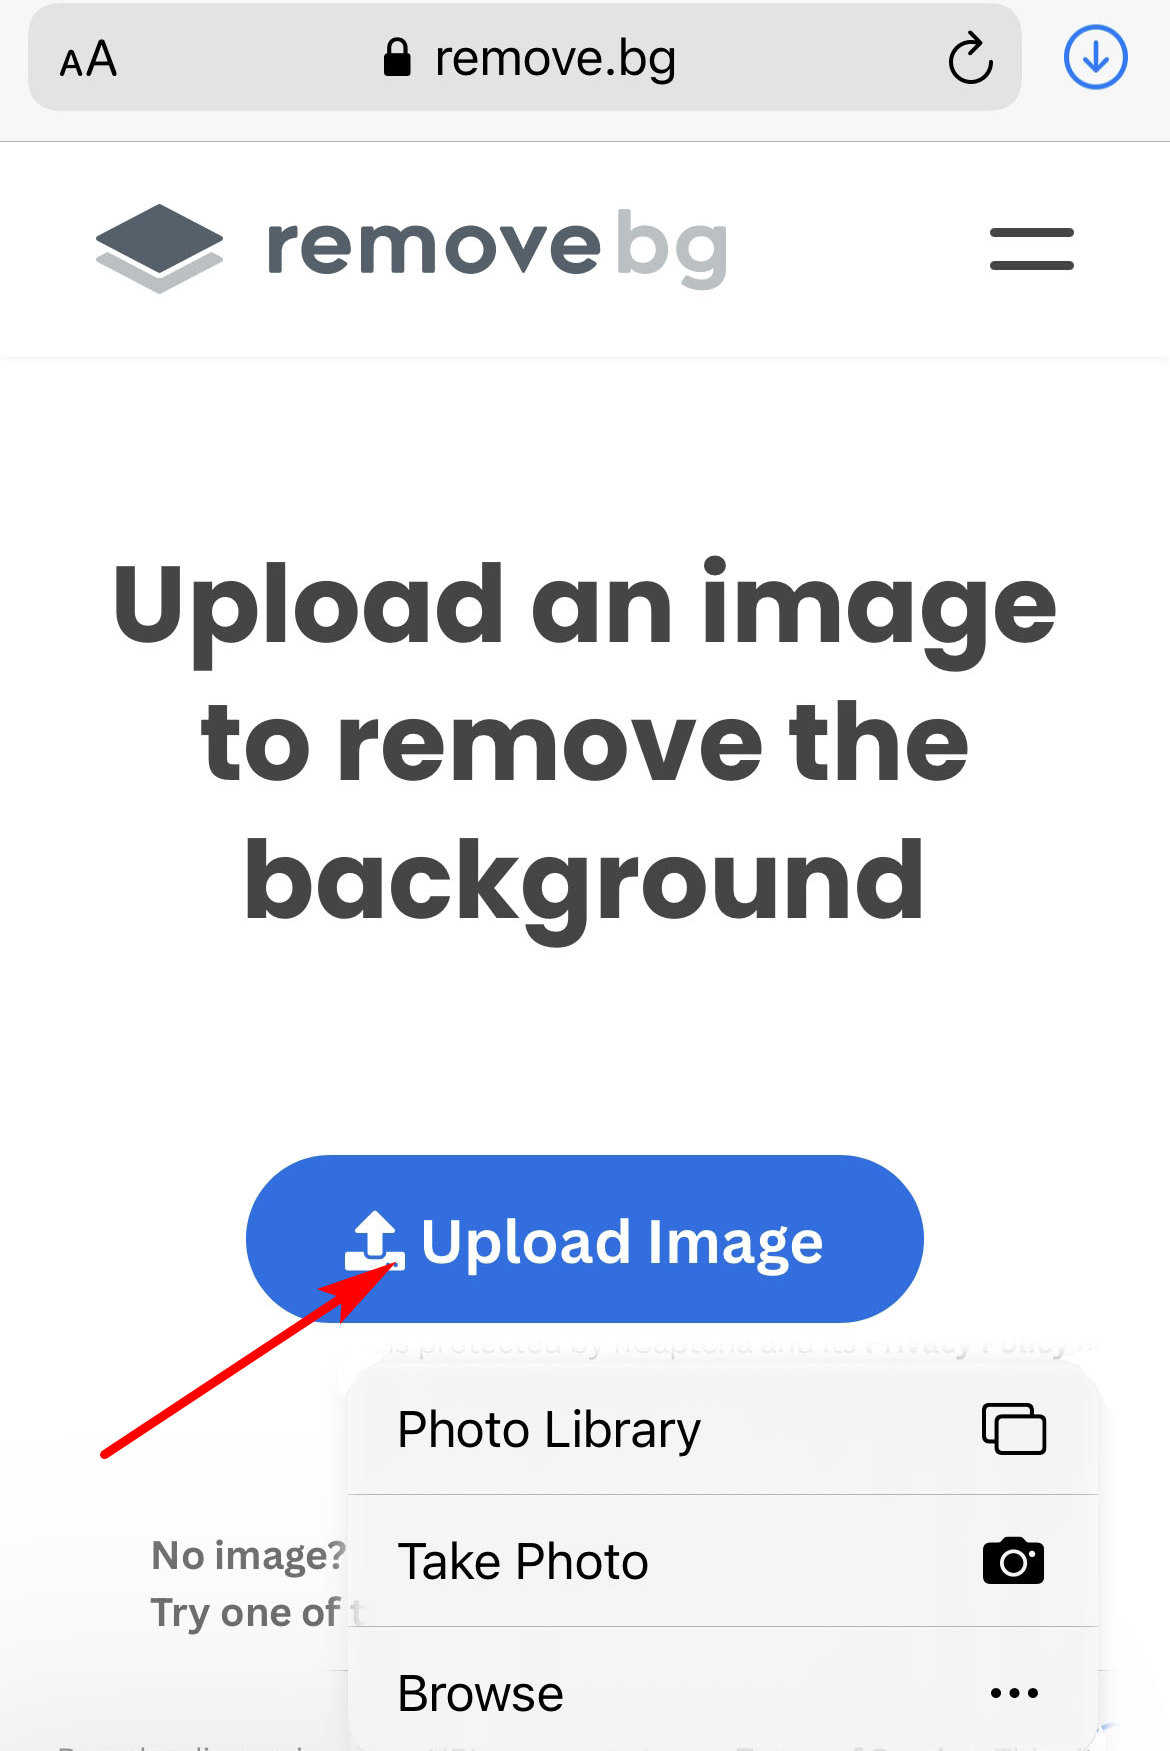 Laden Sie ein Bild in „remove.bg“ hoch